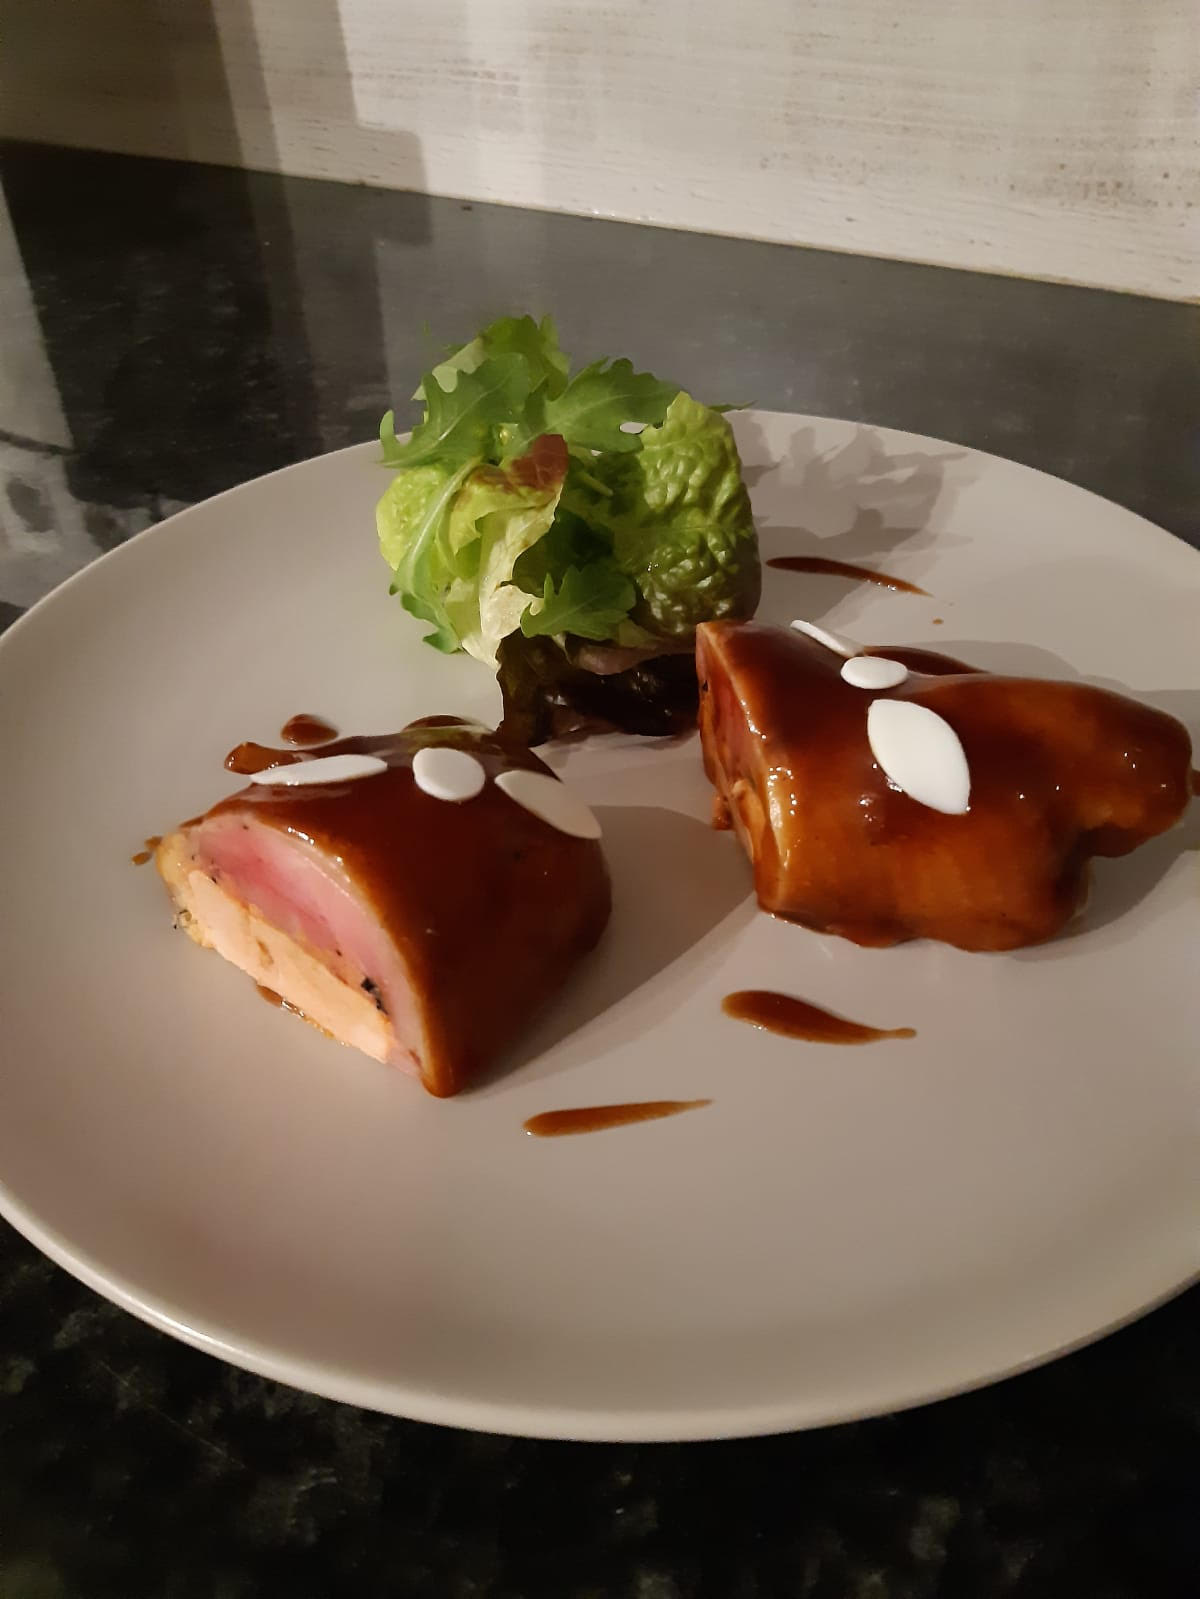 Quartiers de caille truffés et farcis au foie gras de canard (2 pièces par personne)